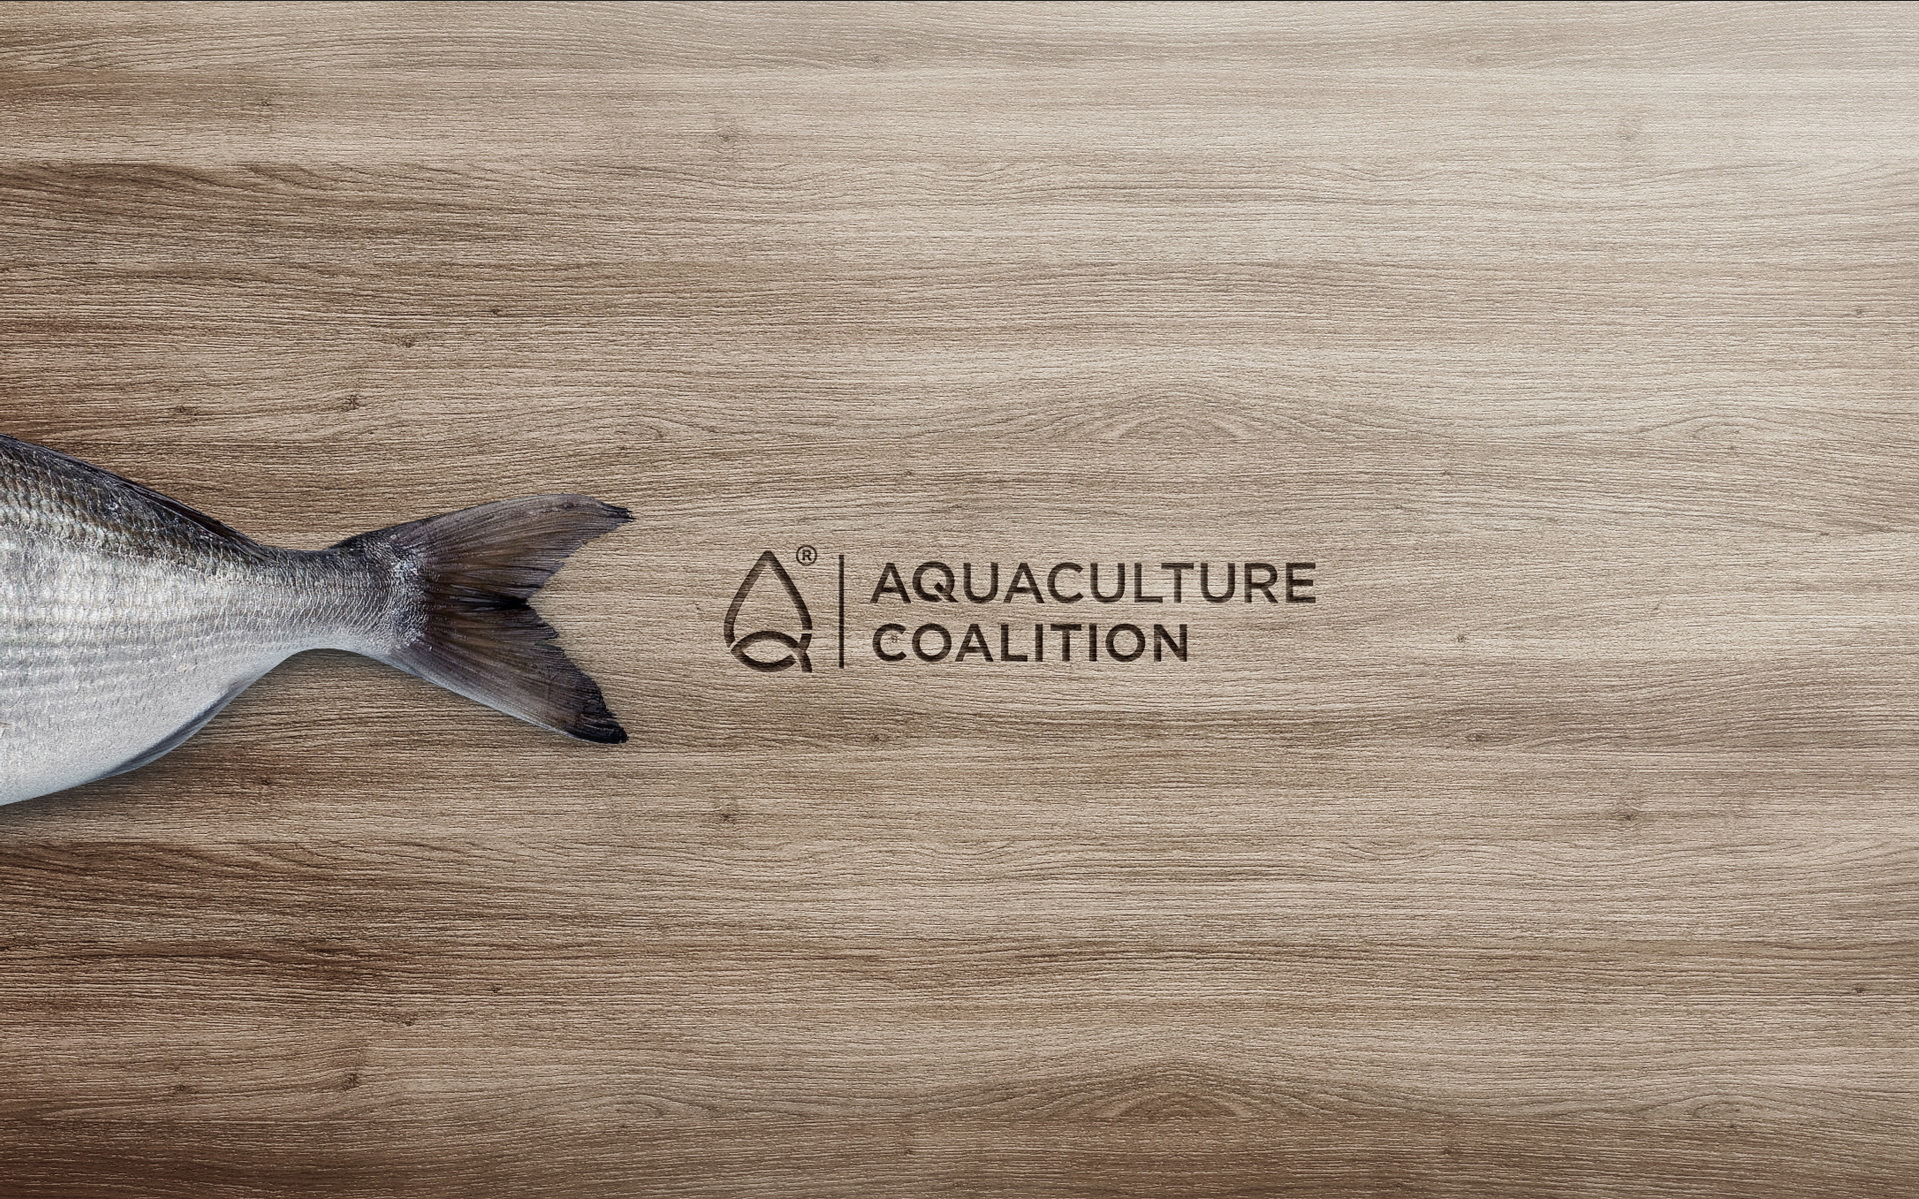 Aquaculture Coalition